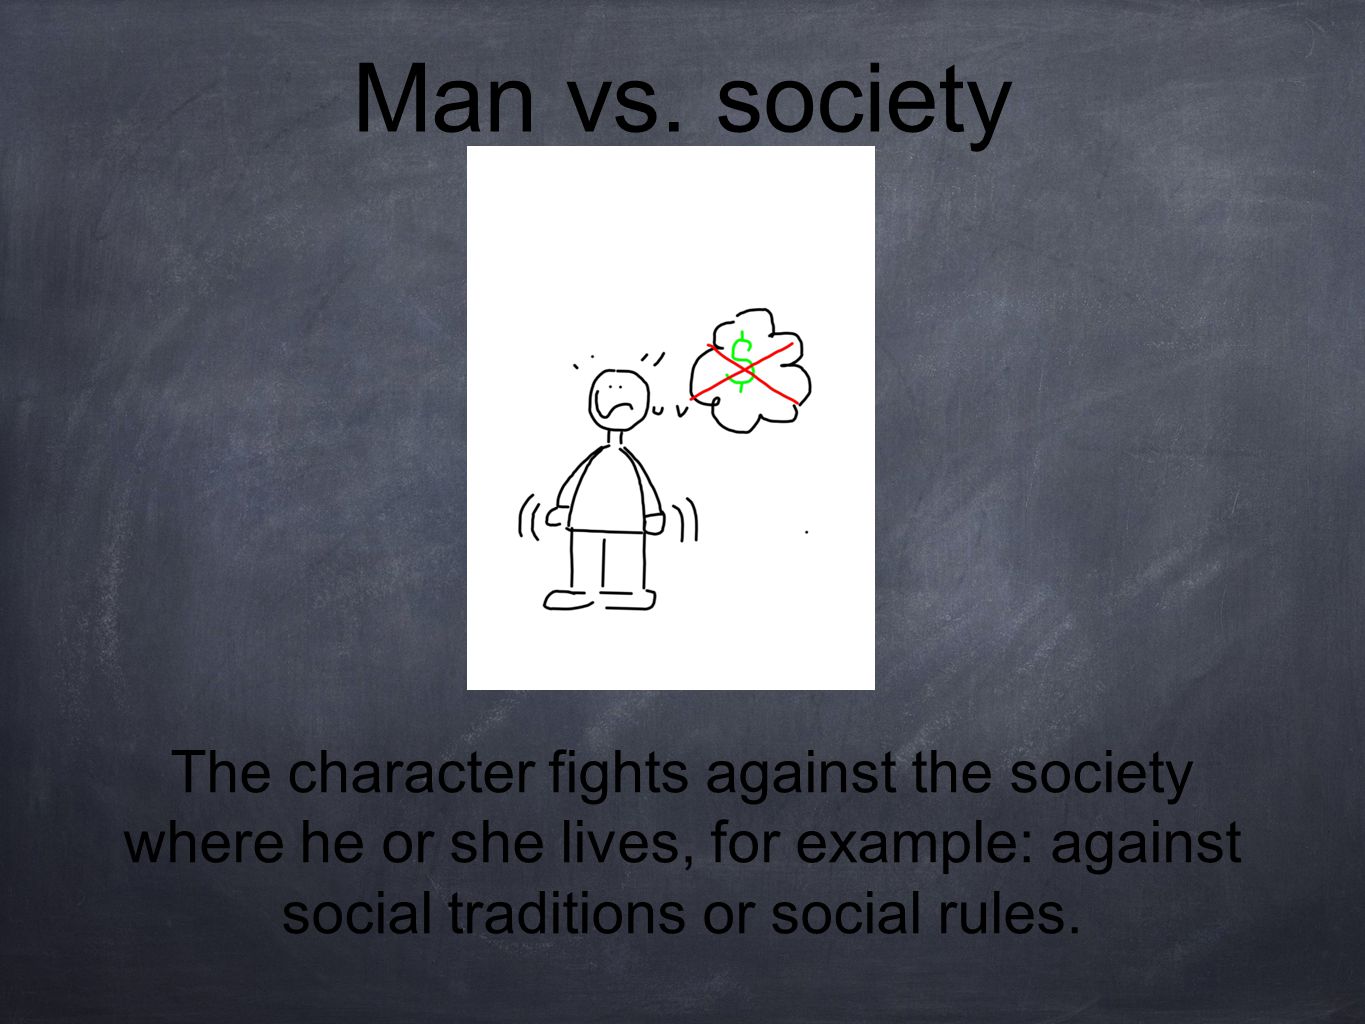 Man vs.